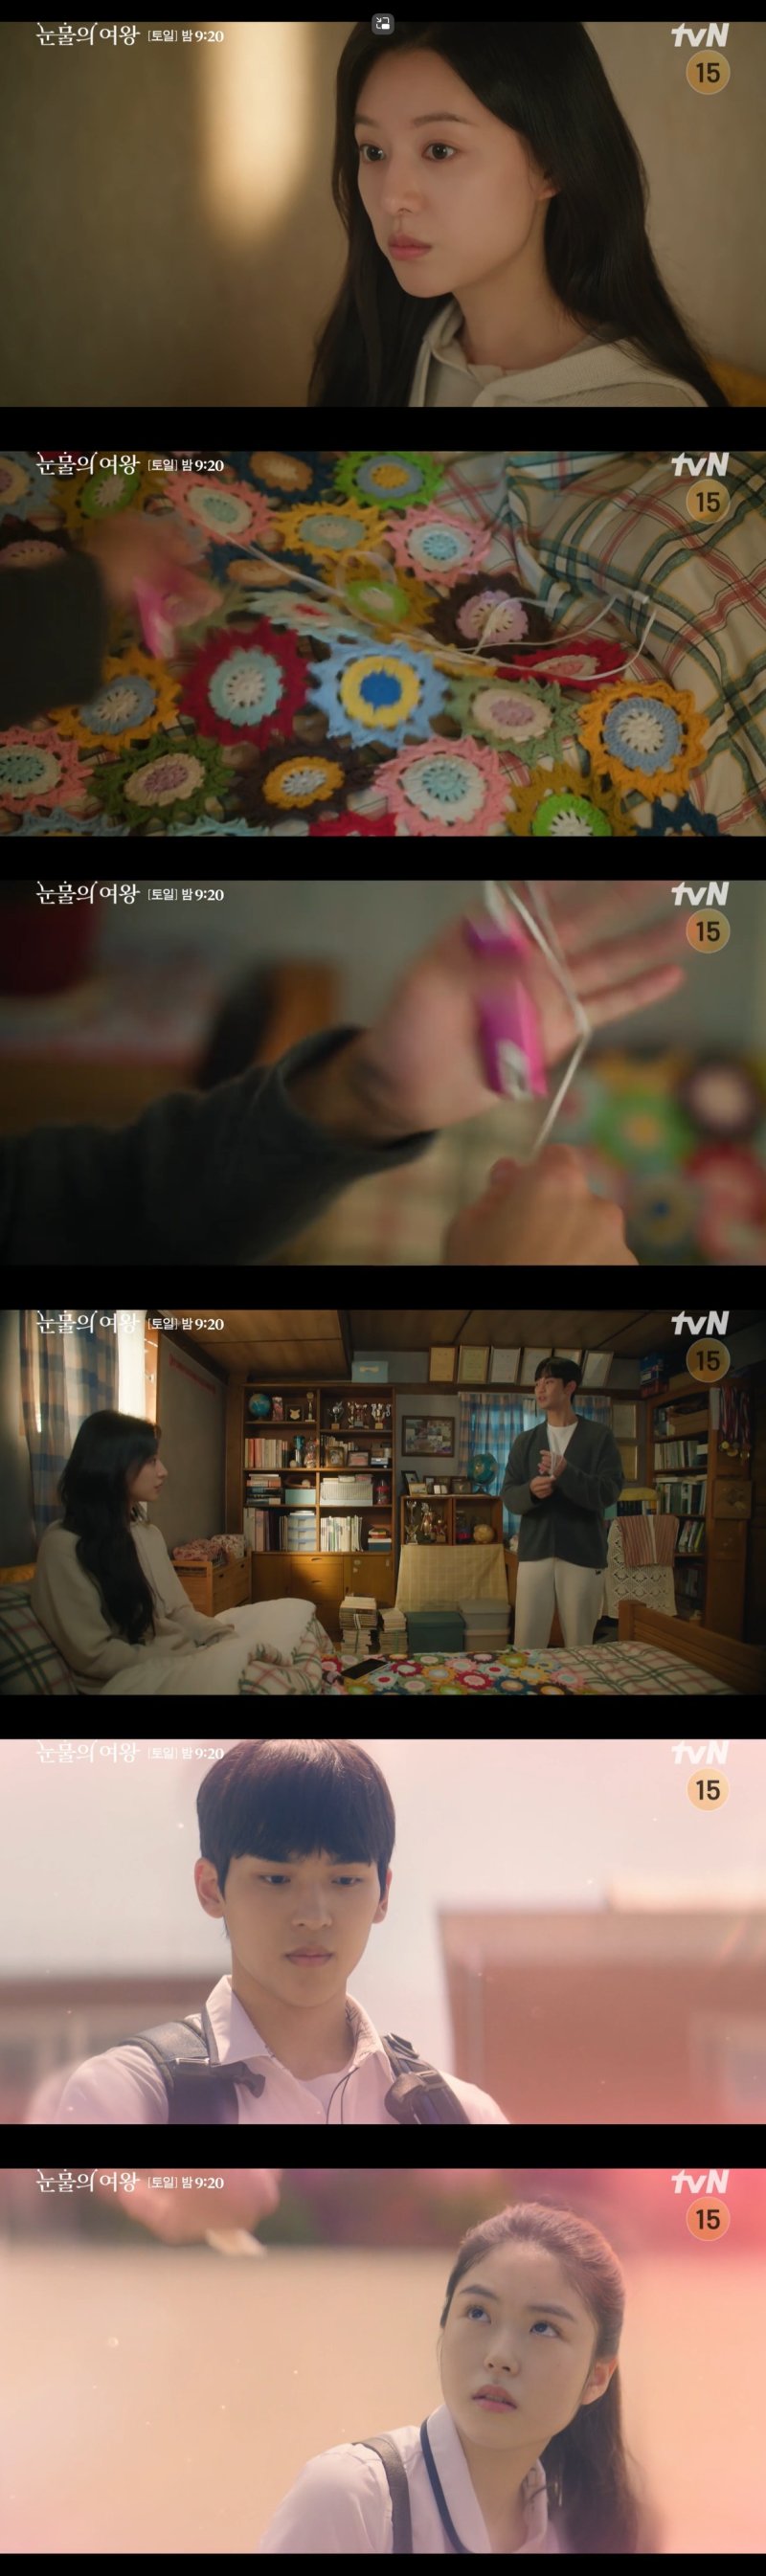 역시 인연…'눈물의 여왕' 김지원, 김수현 '첫사랑'이었다 [RE:TV]